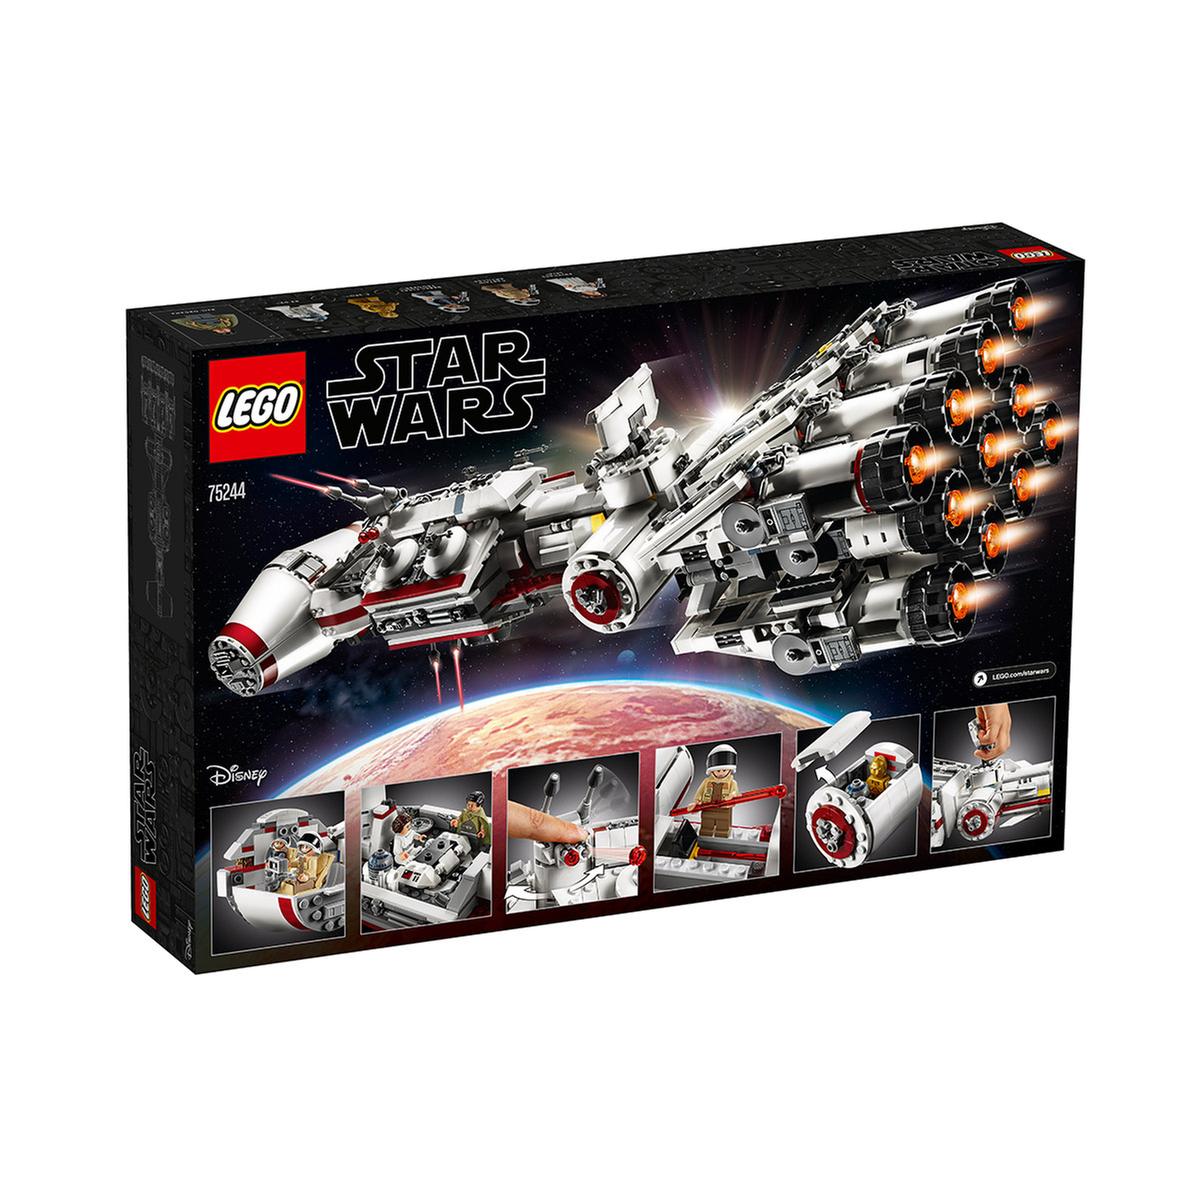 LEGO Star Wars - Tantive IV (75244) | Lego Star Wars | Toys"R"Us España